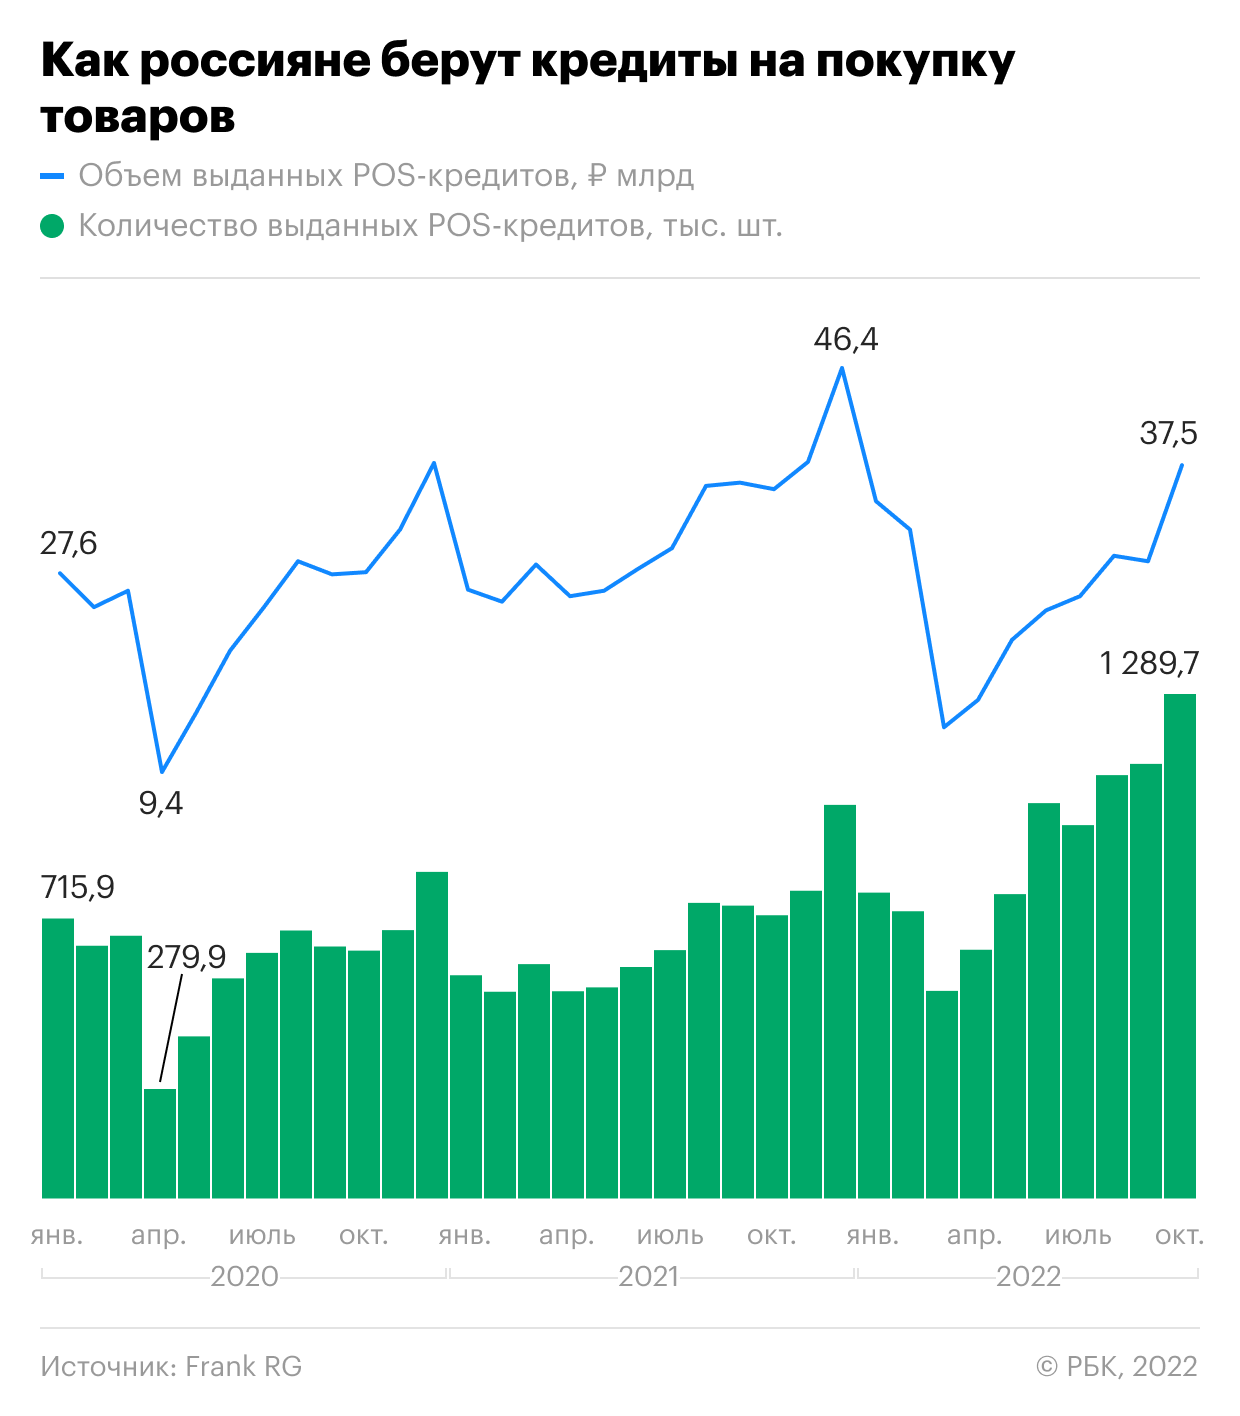 Россияне взяли рекордное с 2017 года число кредитов на покупку товаров